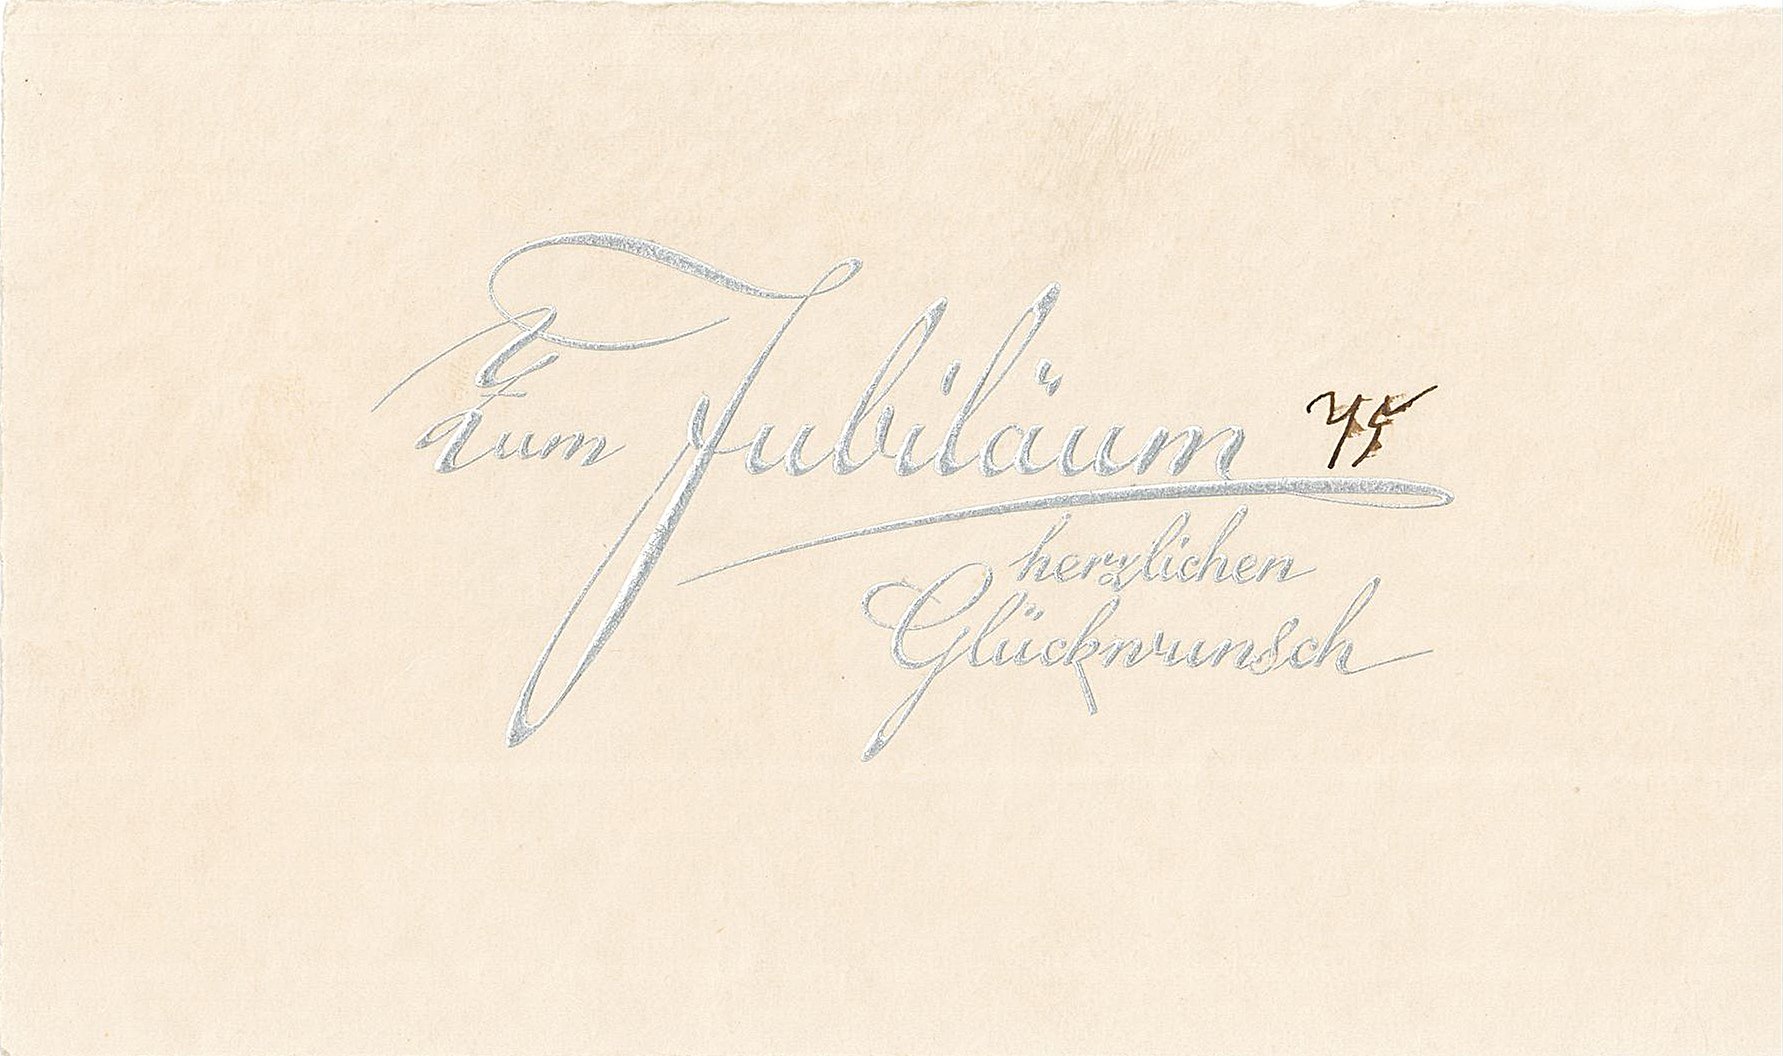 Glückwunschkarte zum 75-jährigen Bestehen des Allgemeinen Anzeigers, 1930 (Museum Wolmirstedt RR-F)